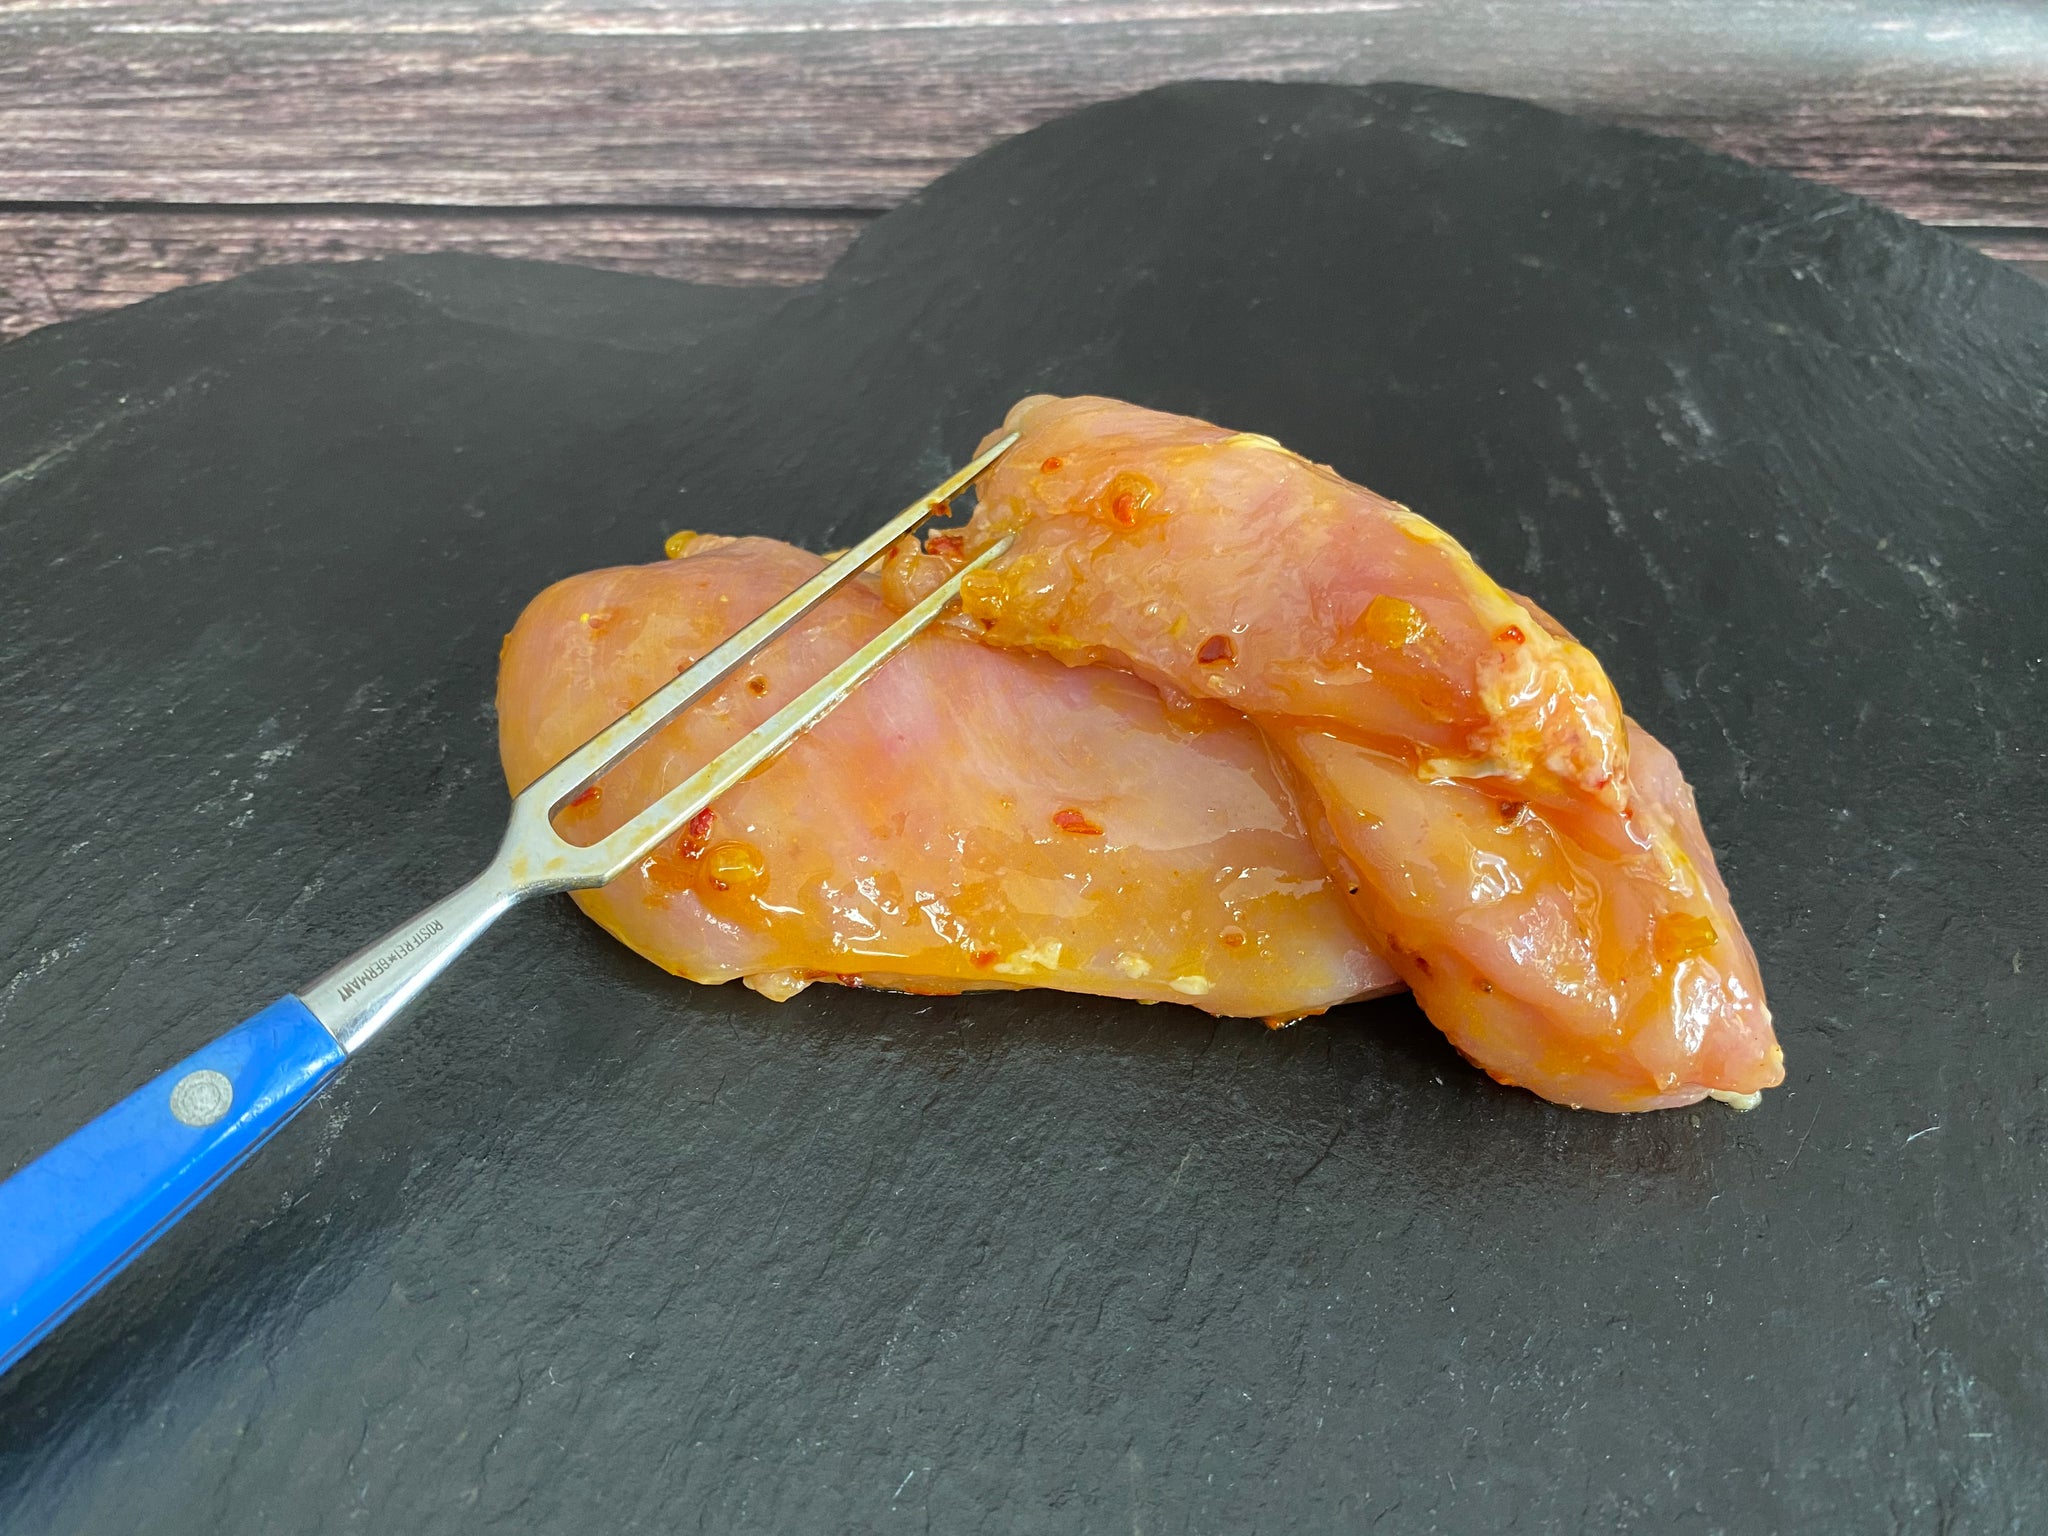 Hähnchenbrustfilet mariniert „Afrika Chilli“ - 200g Portion- Preis pro Kg 30,90€ - Anzahlung